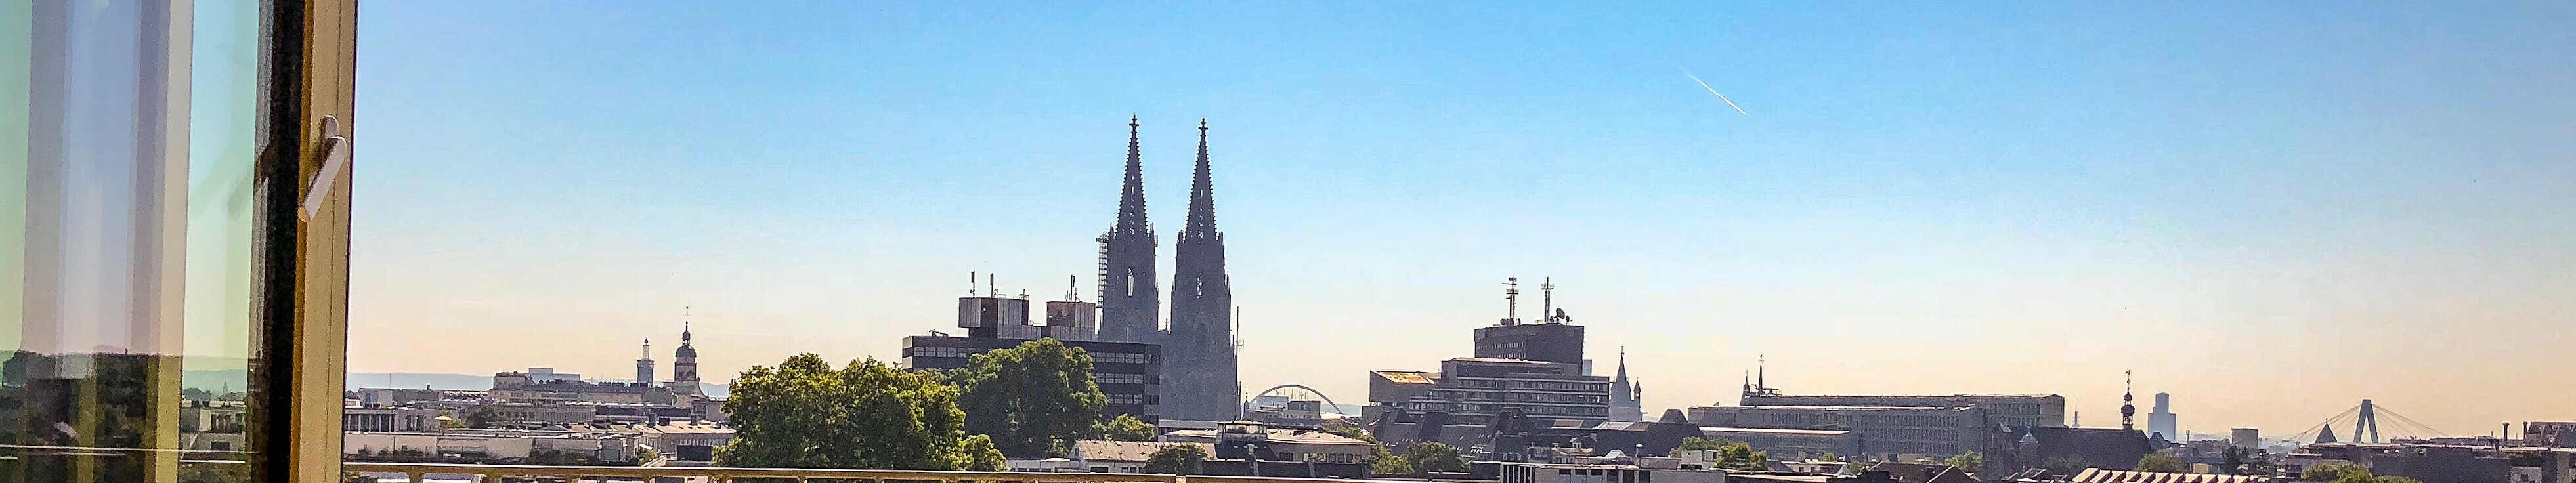 Blick auf den Kölner Dom von der Terrasse des 25 Hours Hotels aus  © Marco Heiderich Trimborn